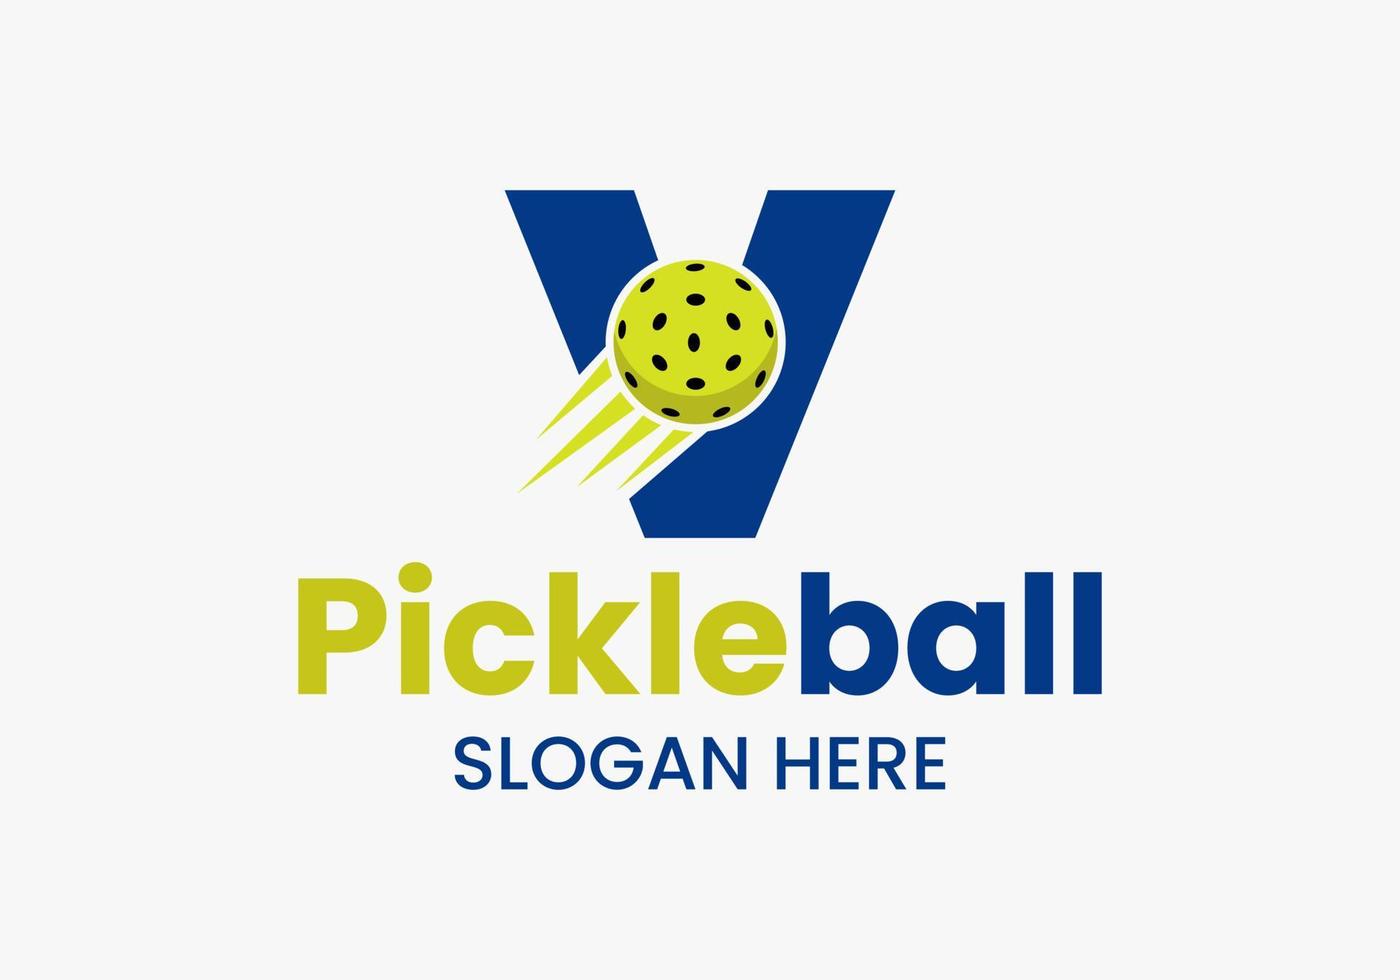 Buchstabe v Pickleball-Logo-Konzept mit beweglichem Pickleball-Symbol. Pickle-Ball-Logo-Vektorvorlage vektor